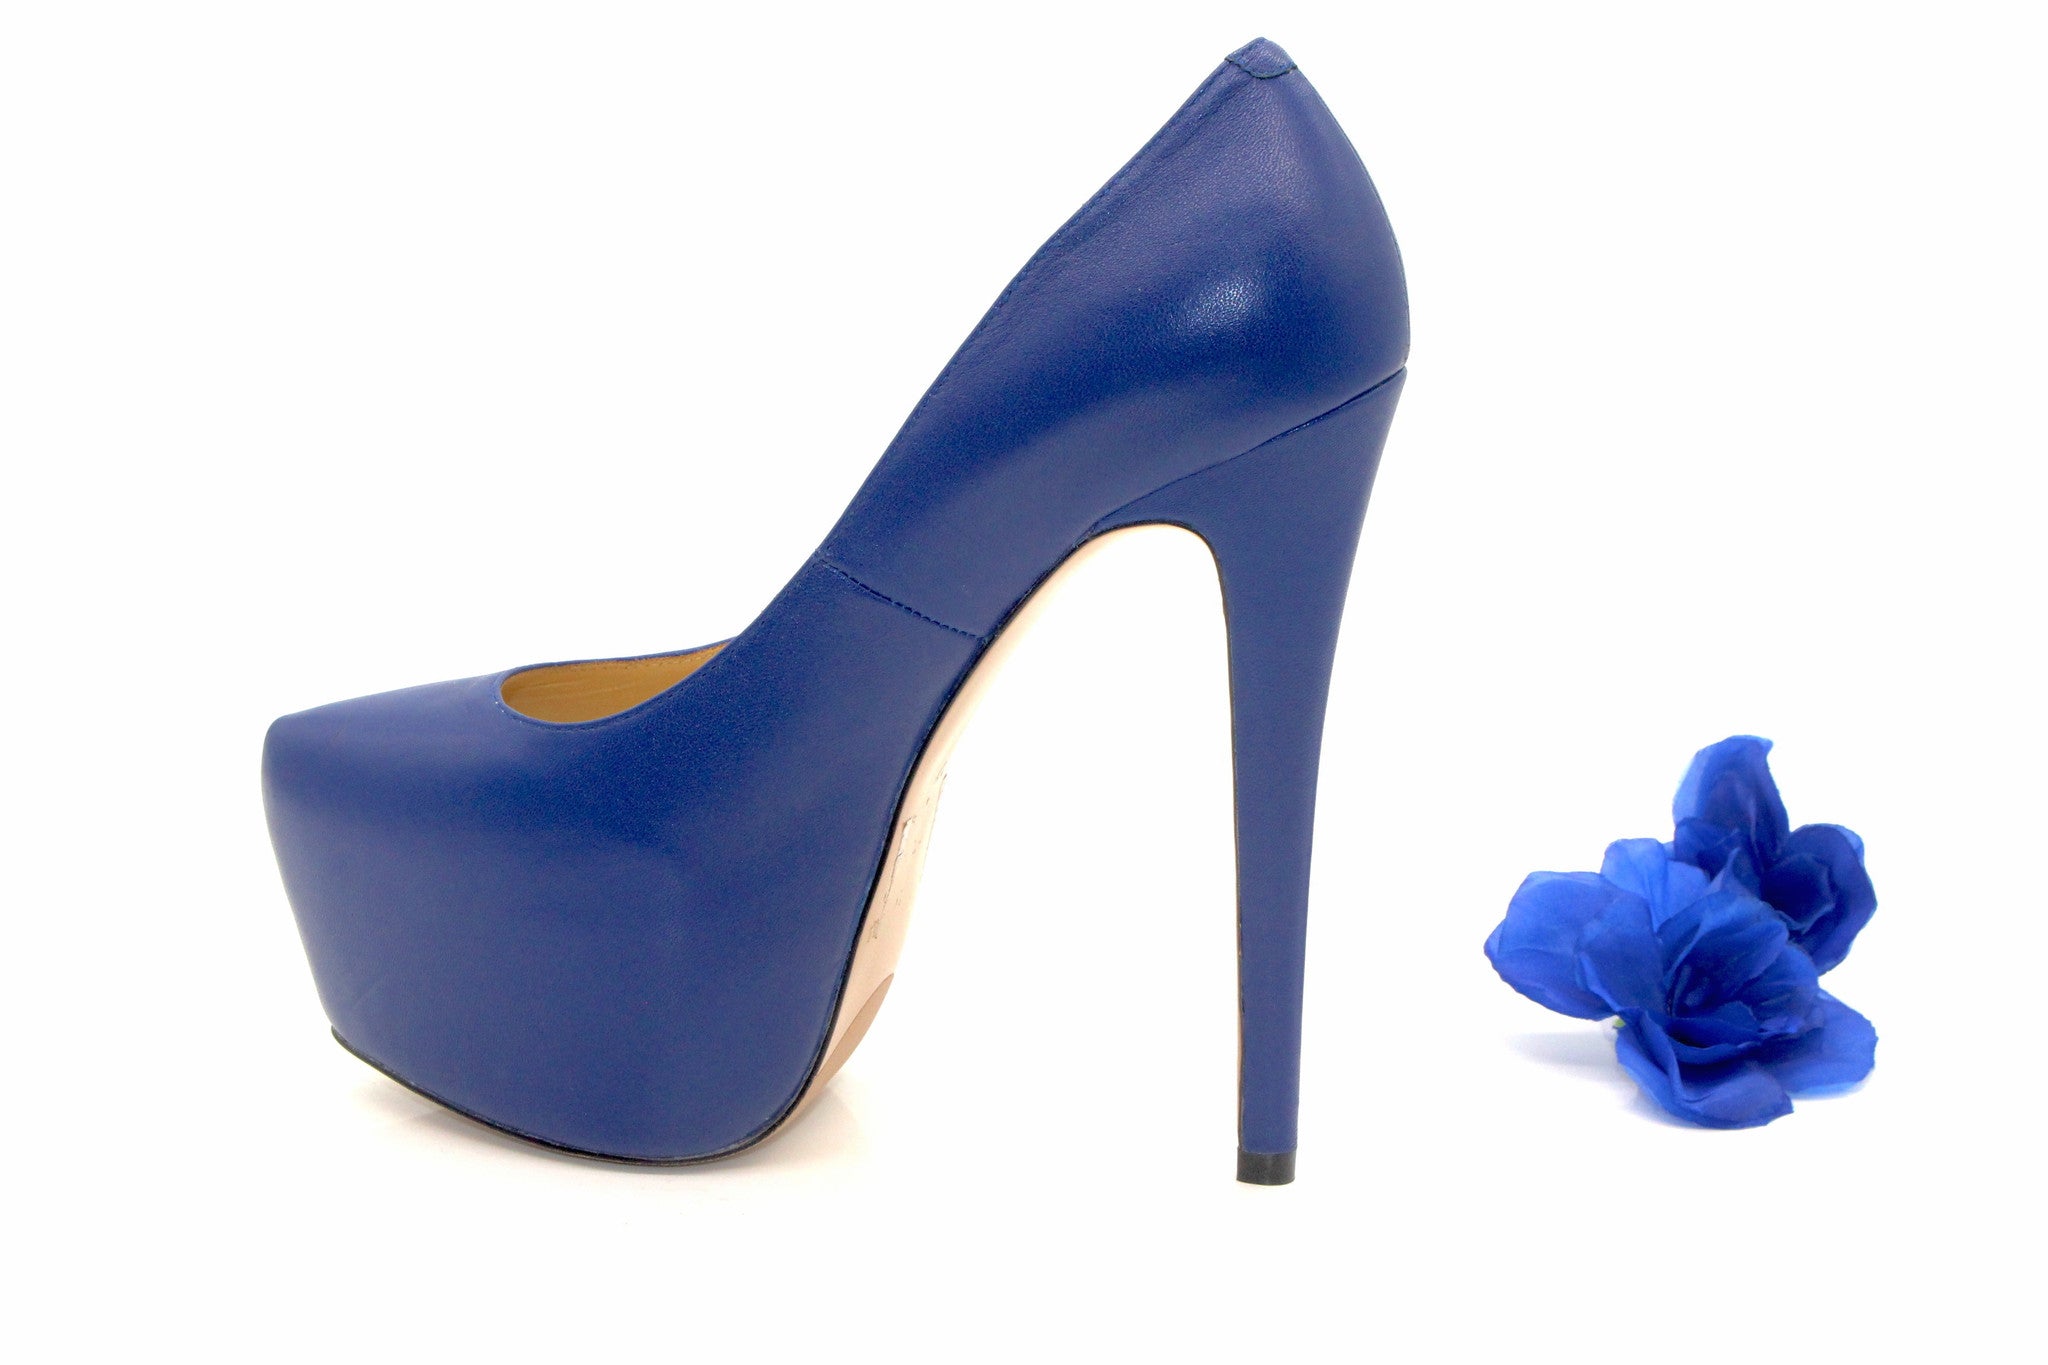 6 inch designer heels